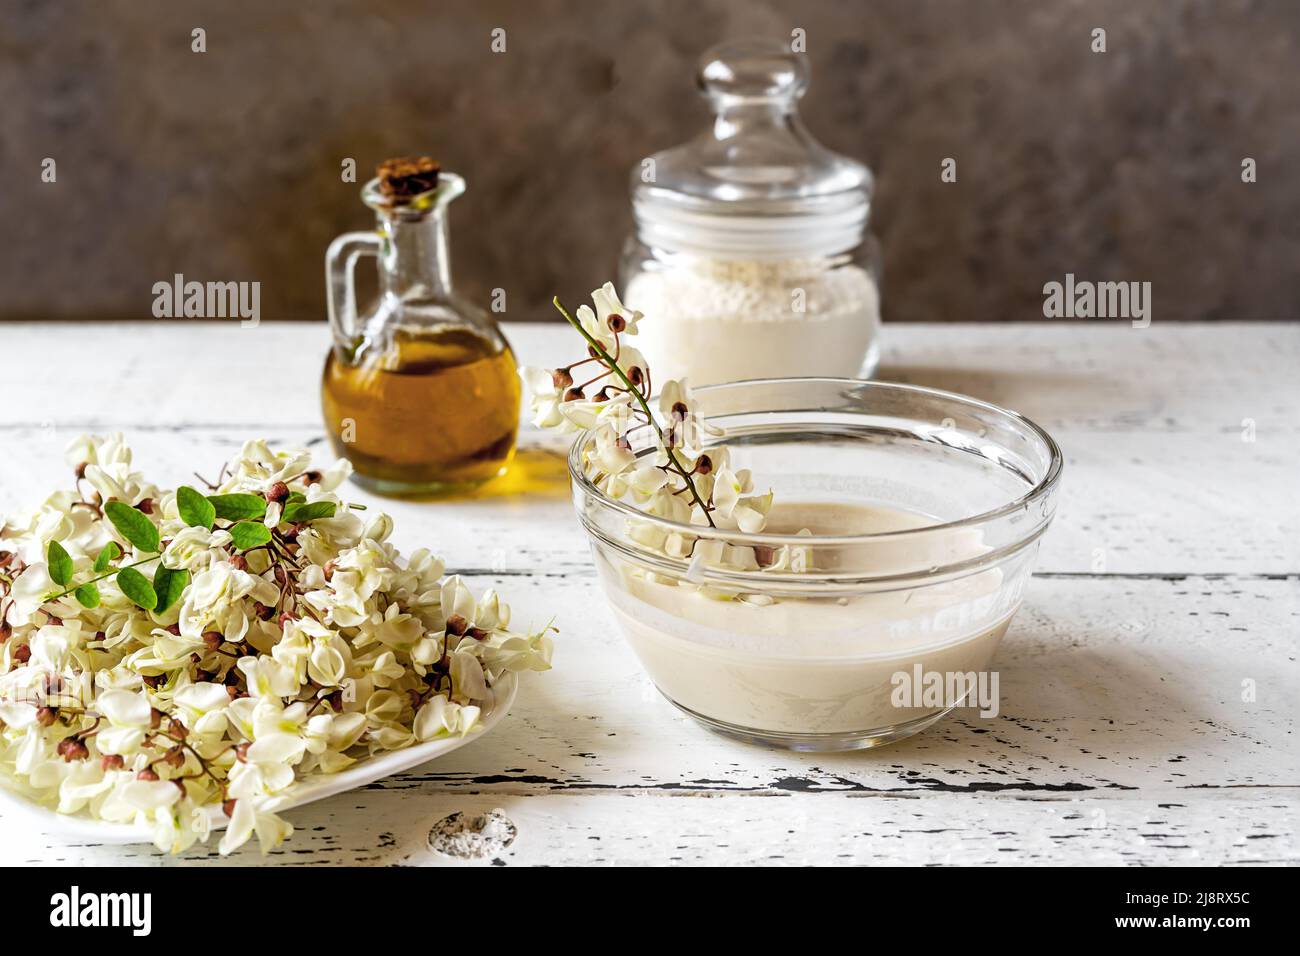 Akazienblumen auf Teller mit Teig und getauchten Zweig zum Kochen fritters Stockfoto